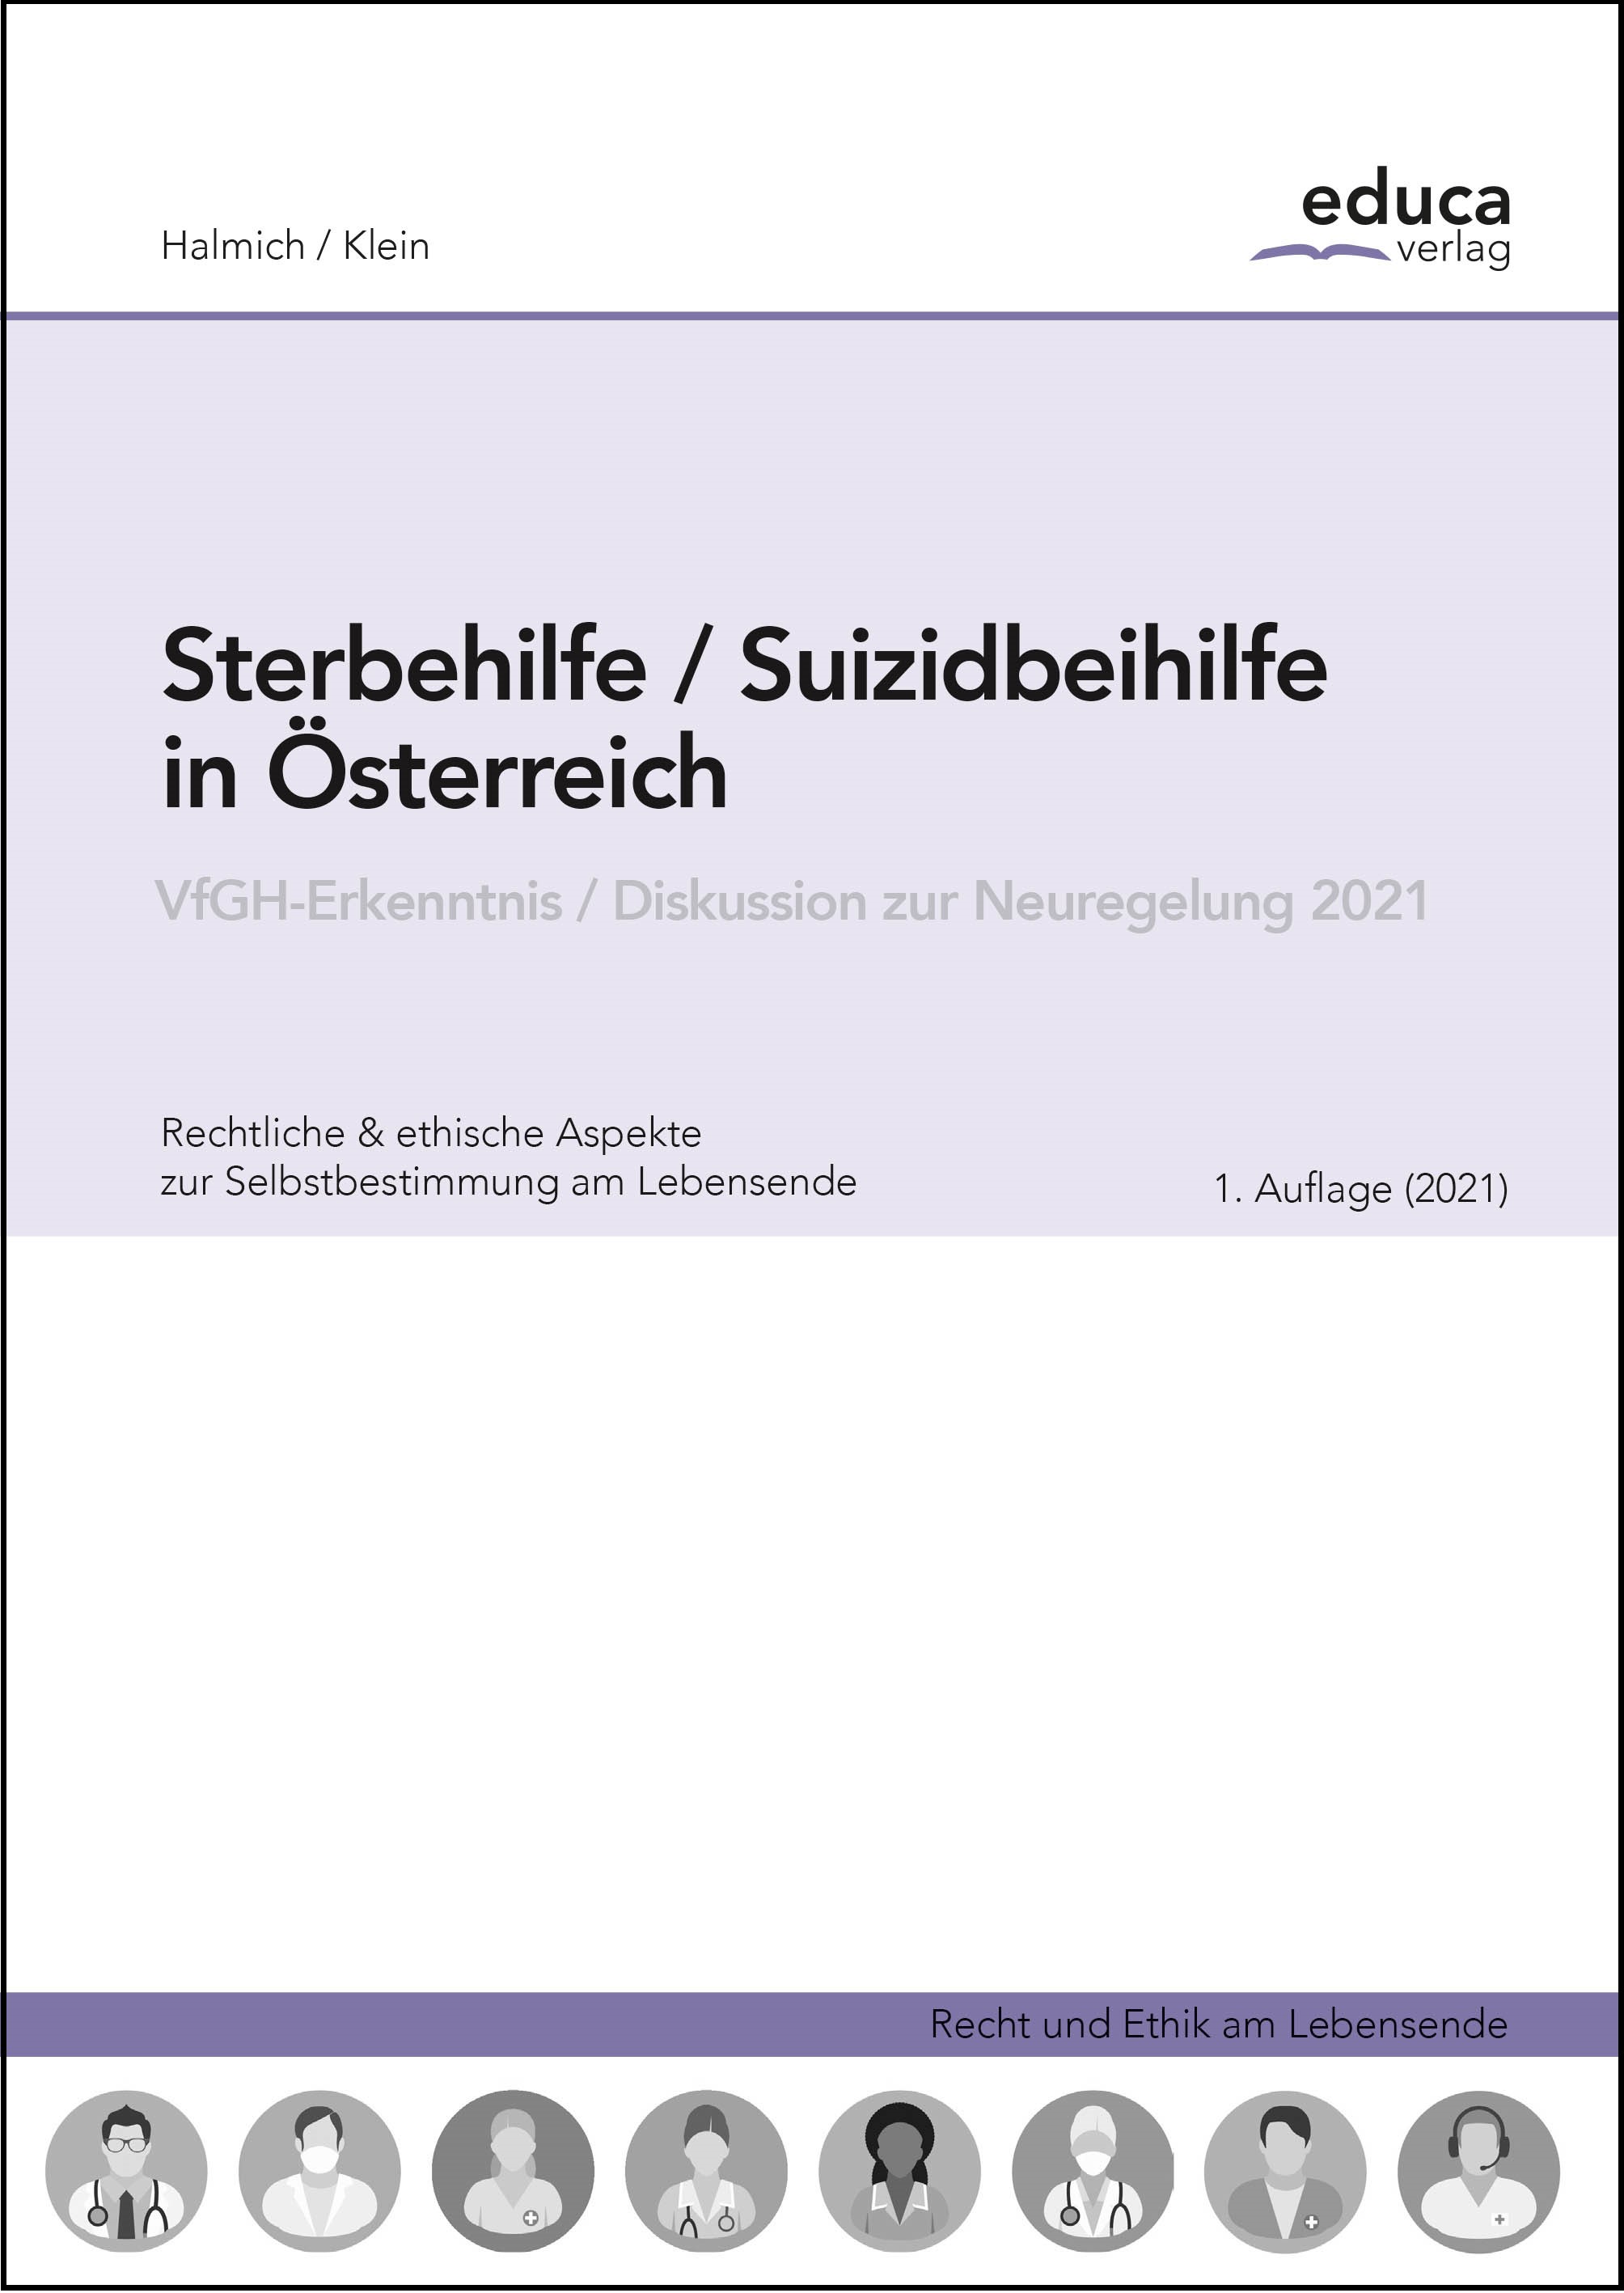 Sterbehilfe / Suizidbeihilfe in Österreich